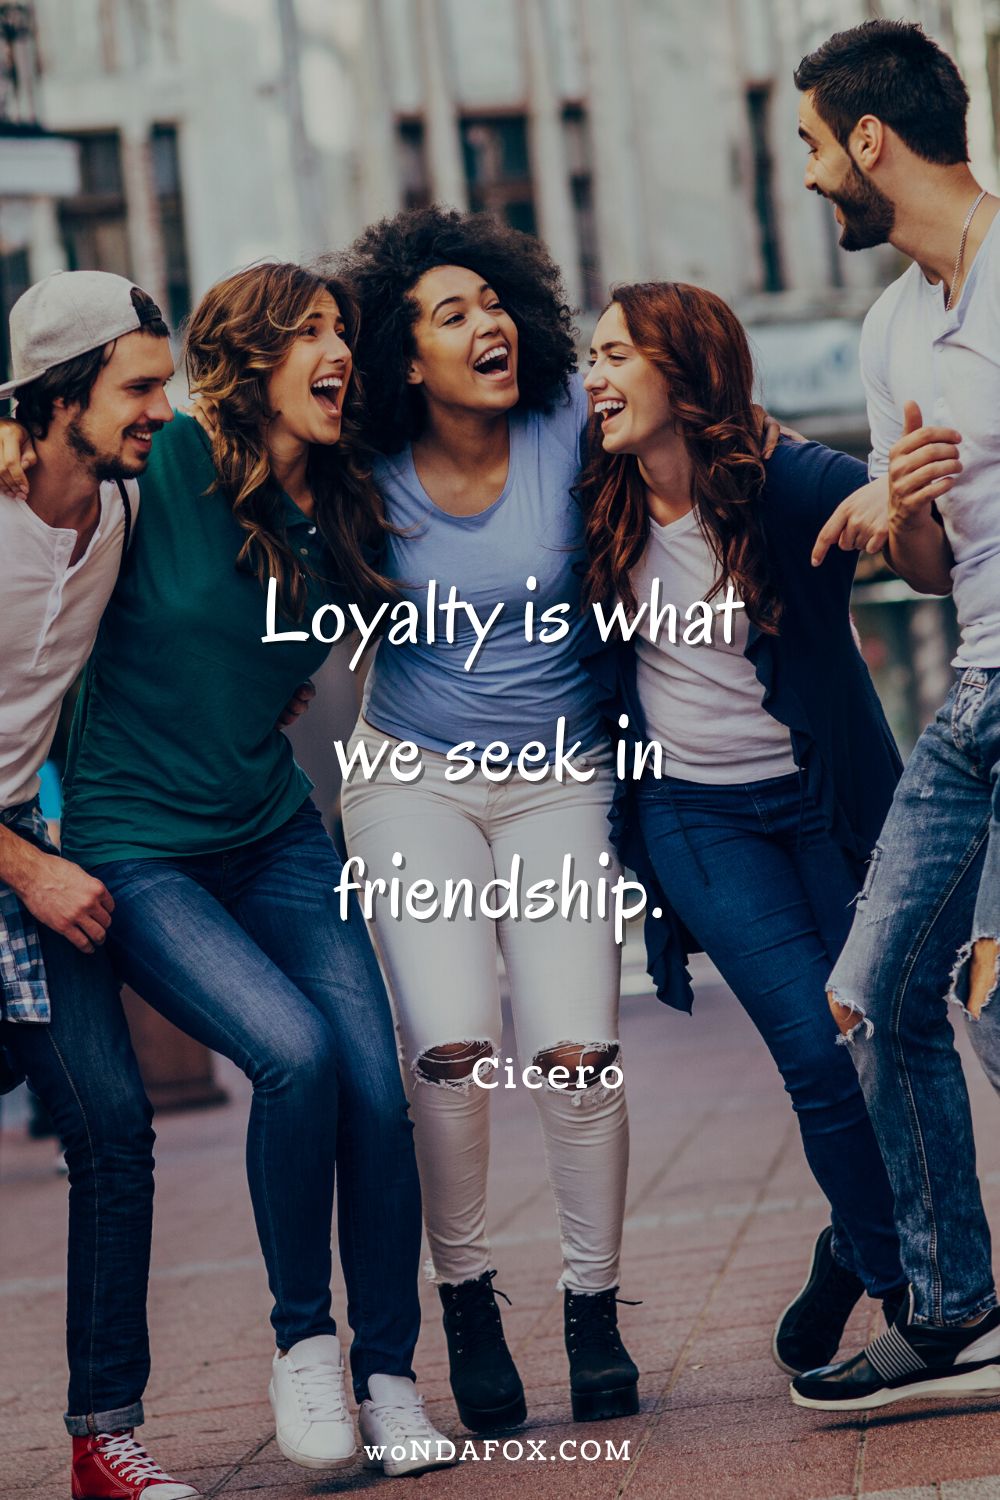 “Loyalty is what we seek in friendship.” 